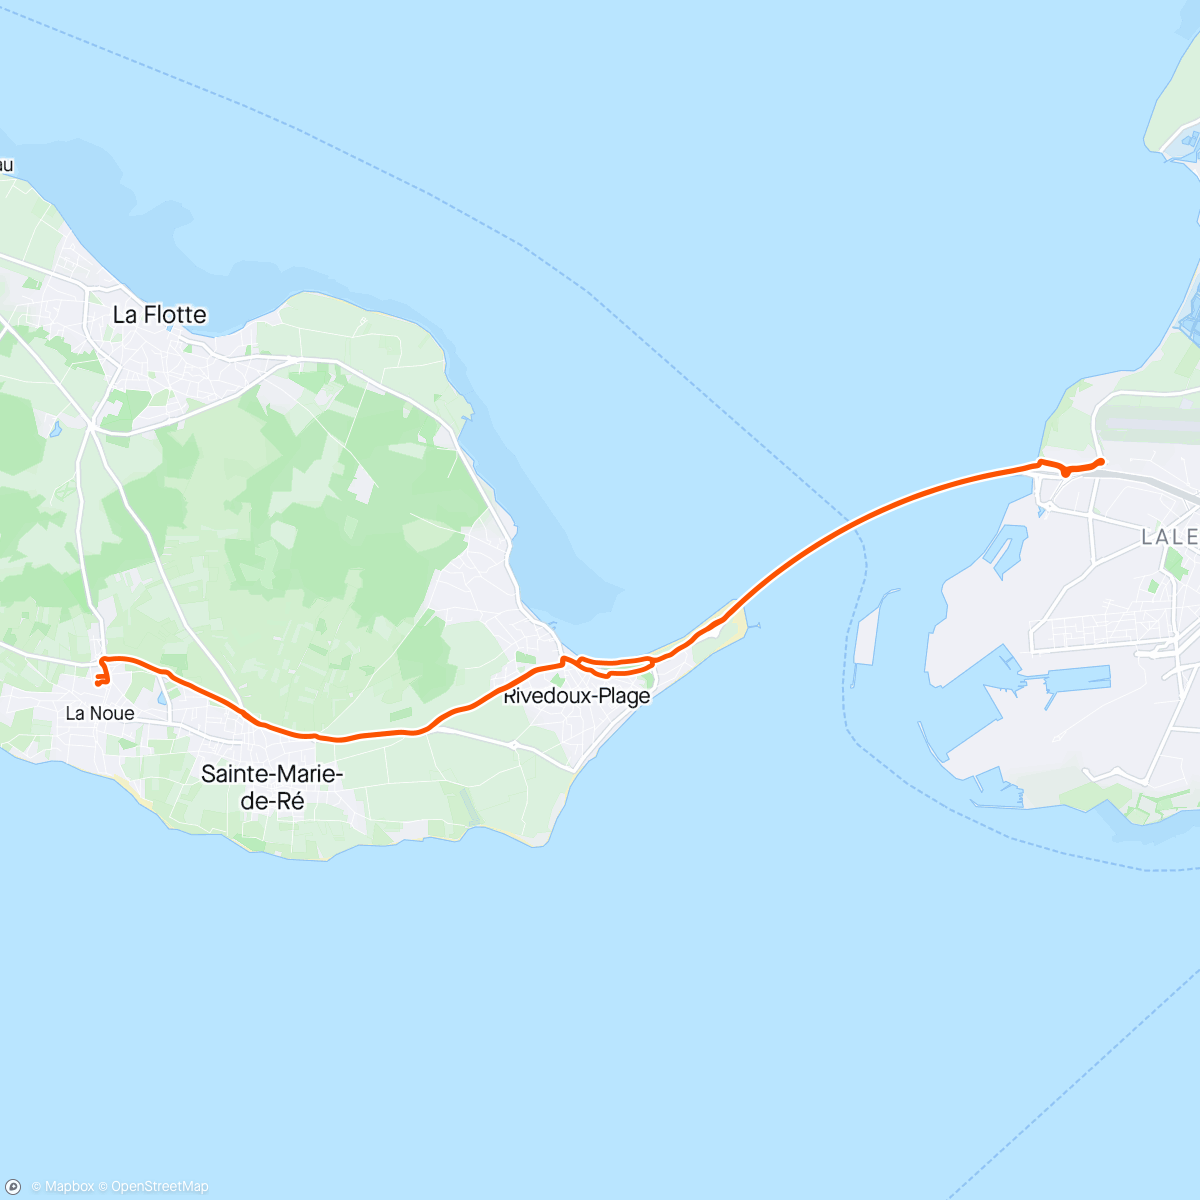 「Pont de Ré return with île de Ré CC」活動的地圖